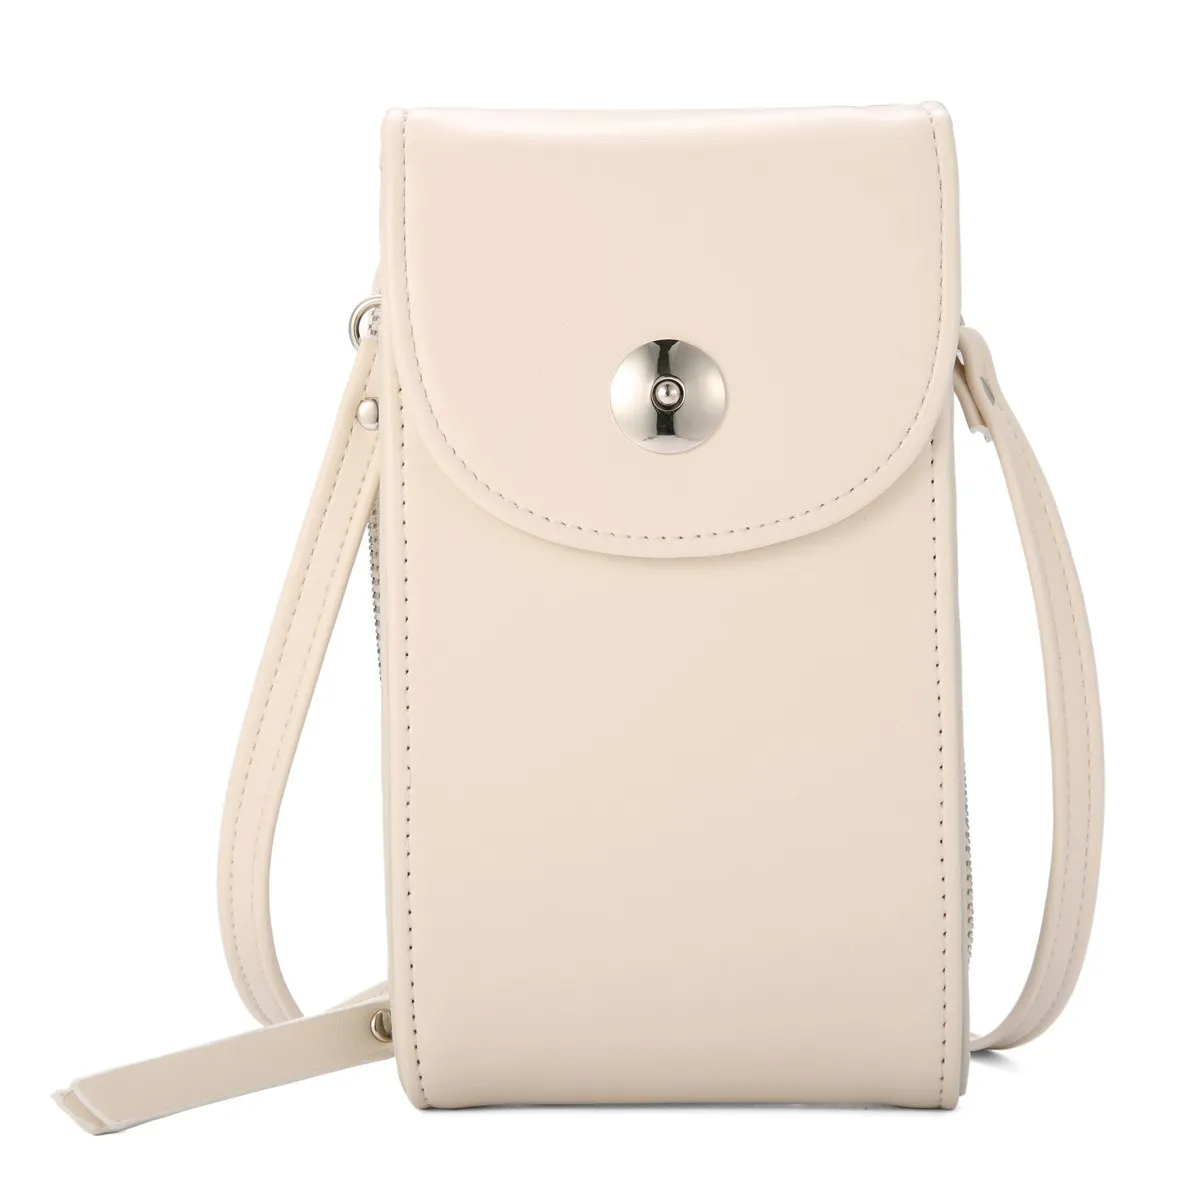 5,5 дюймов универсальная Повседневная сумка, многослойный Чехол для телефона, кошелек, слот для карт, винтажная мини сумка на плечо с застежкой для девочек, для iPhone, huawei - Цвет: Off White